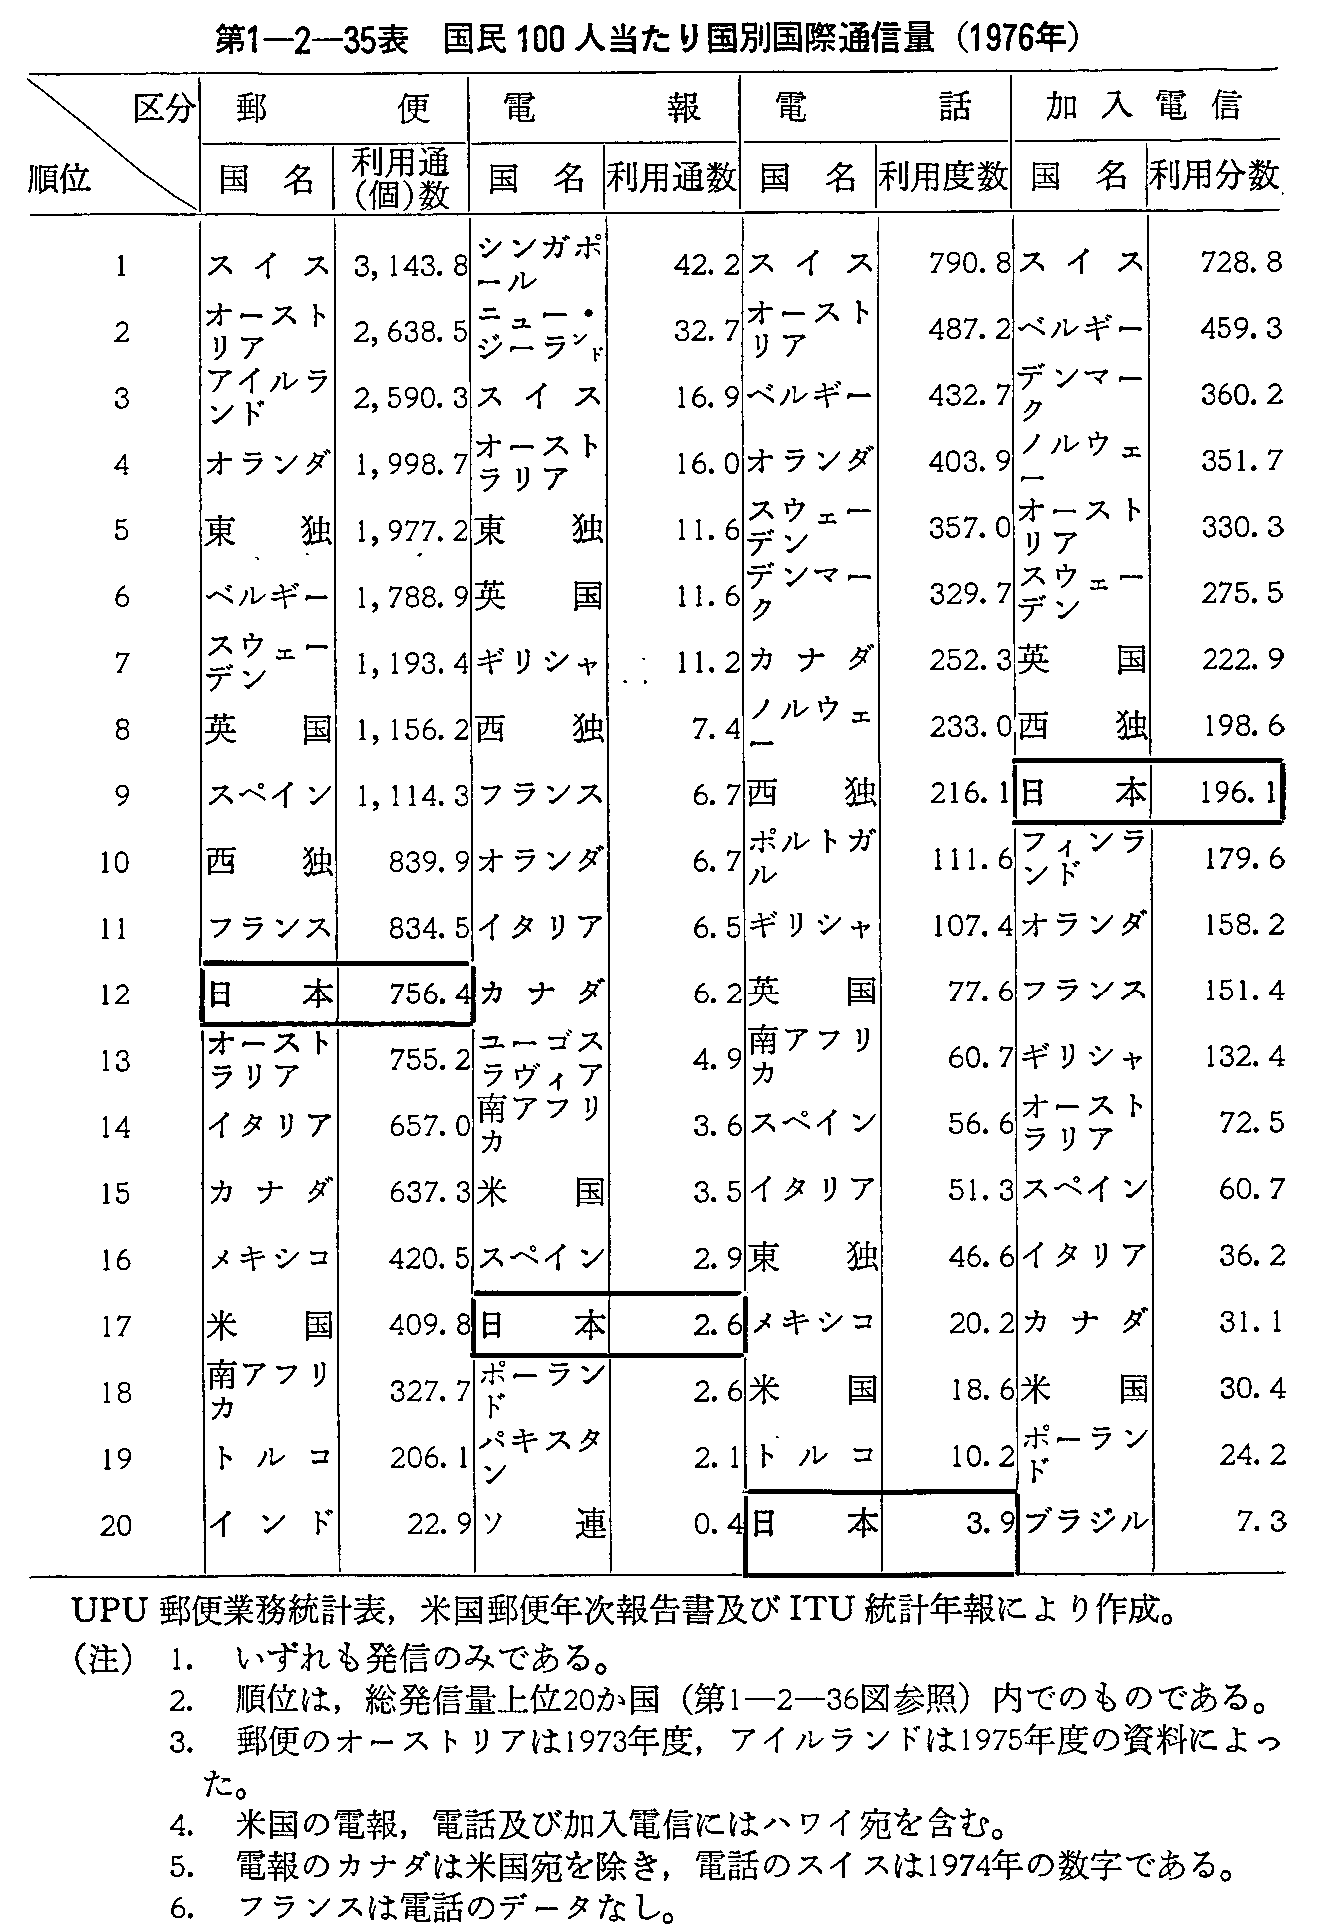 1-2-35\ 100l荑ʍےʐM(1976N)